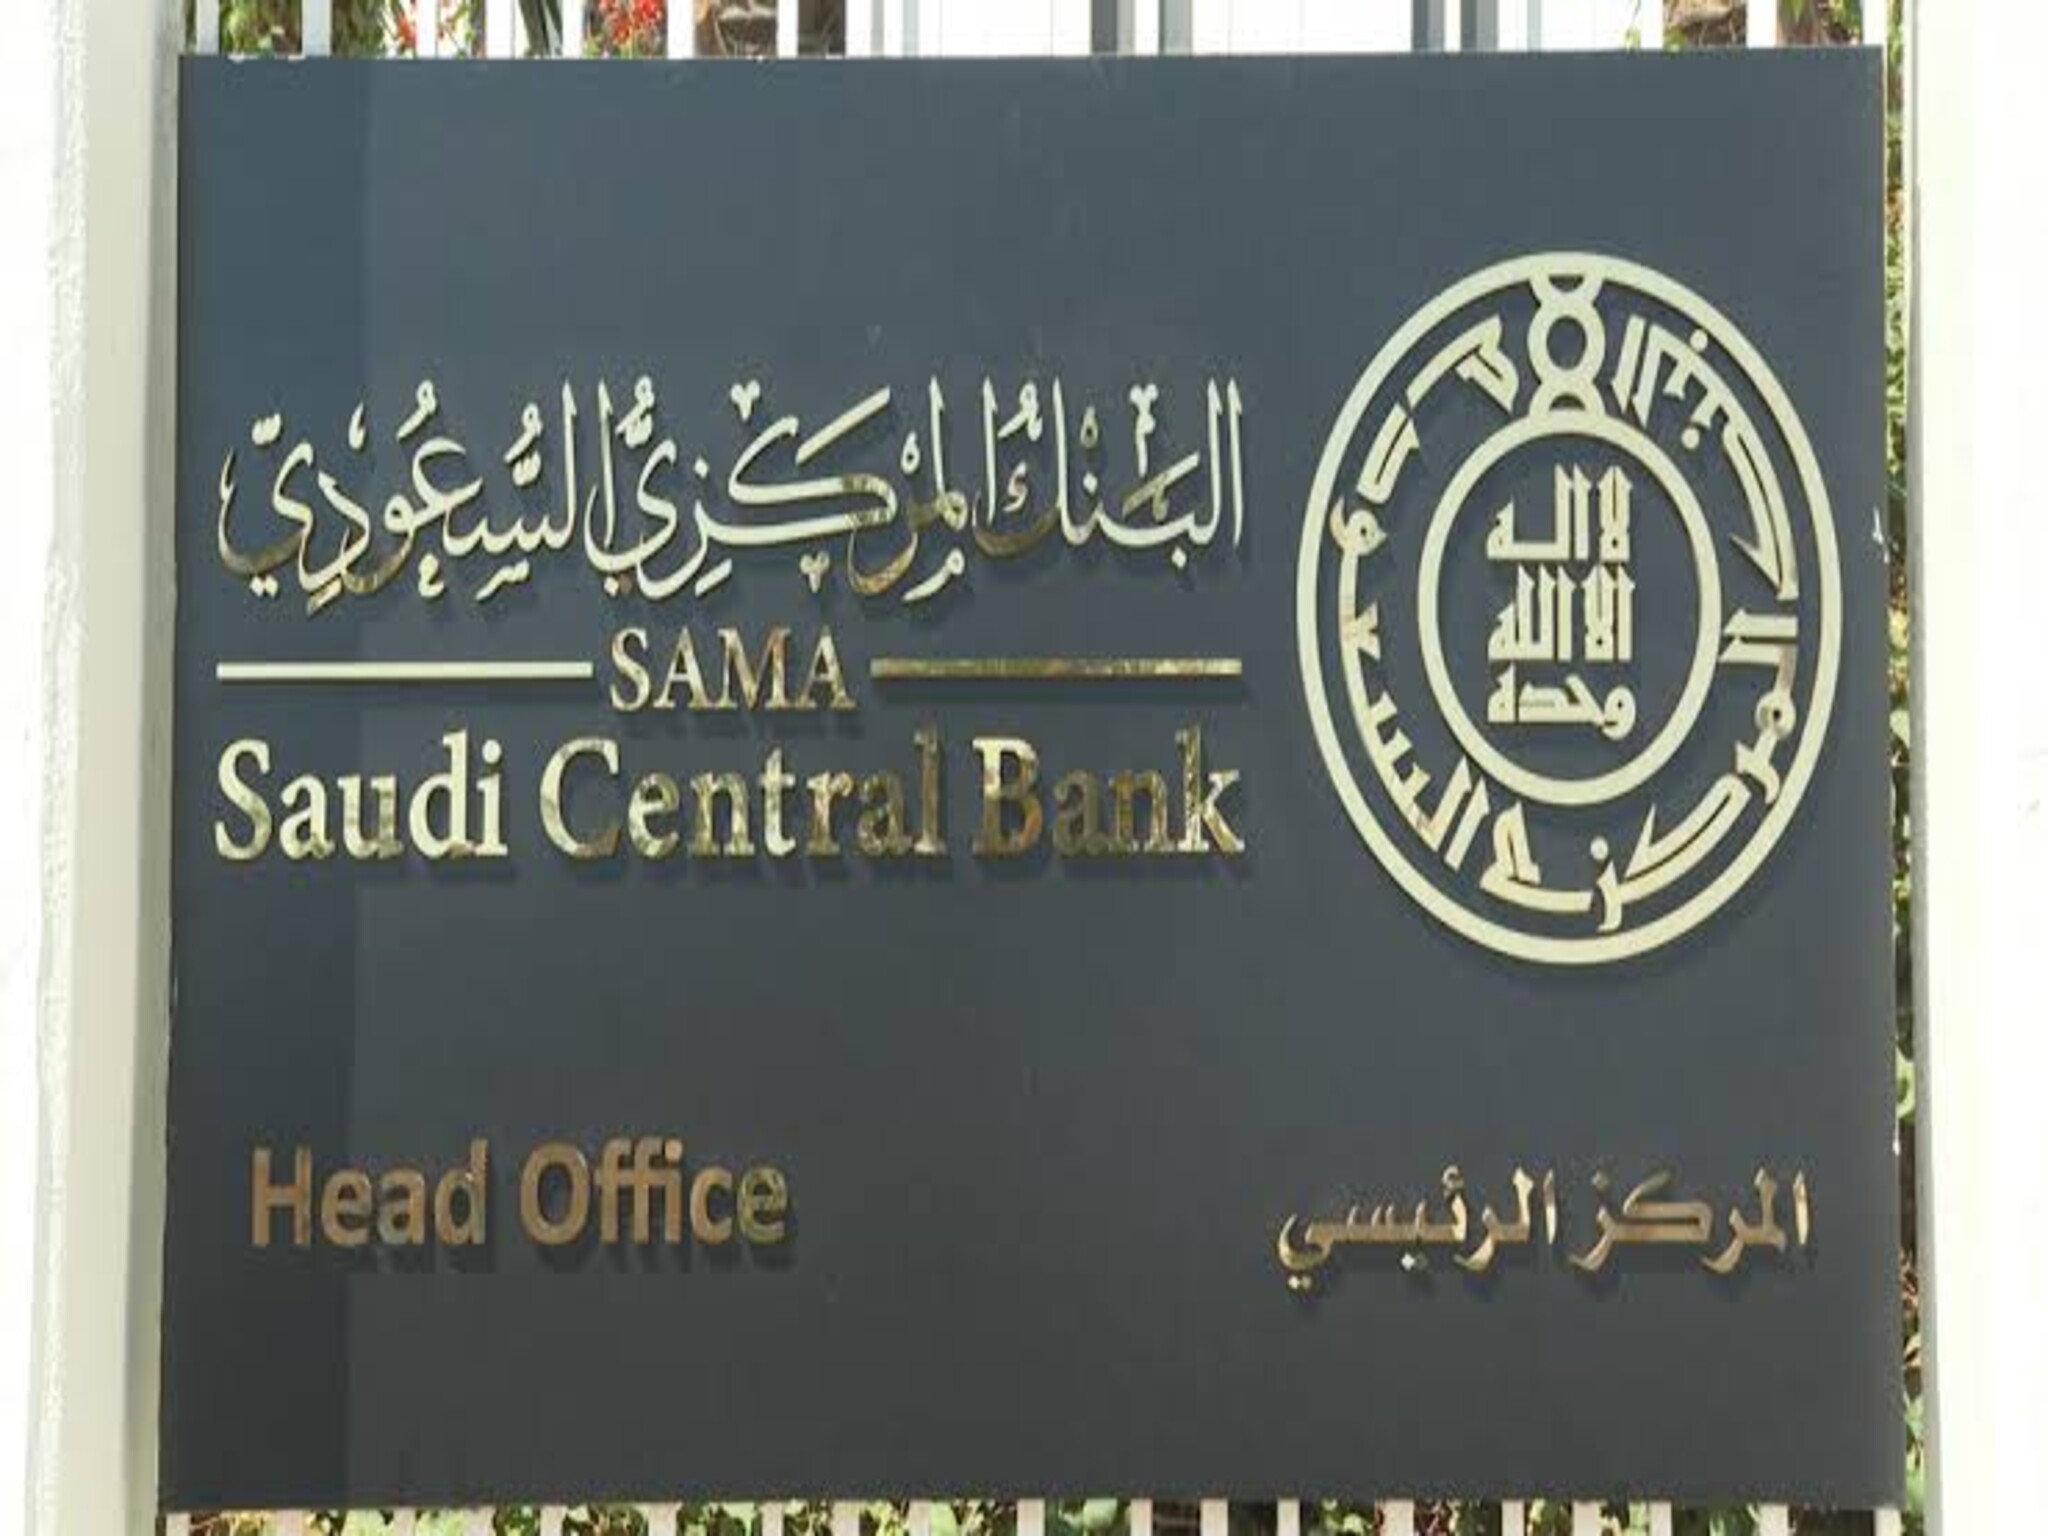 كيفية تقديم شكوى للبنك المركزي السعودي sama 1444 وحجز موعد